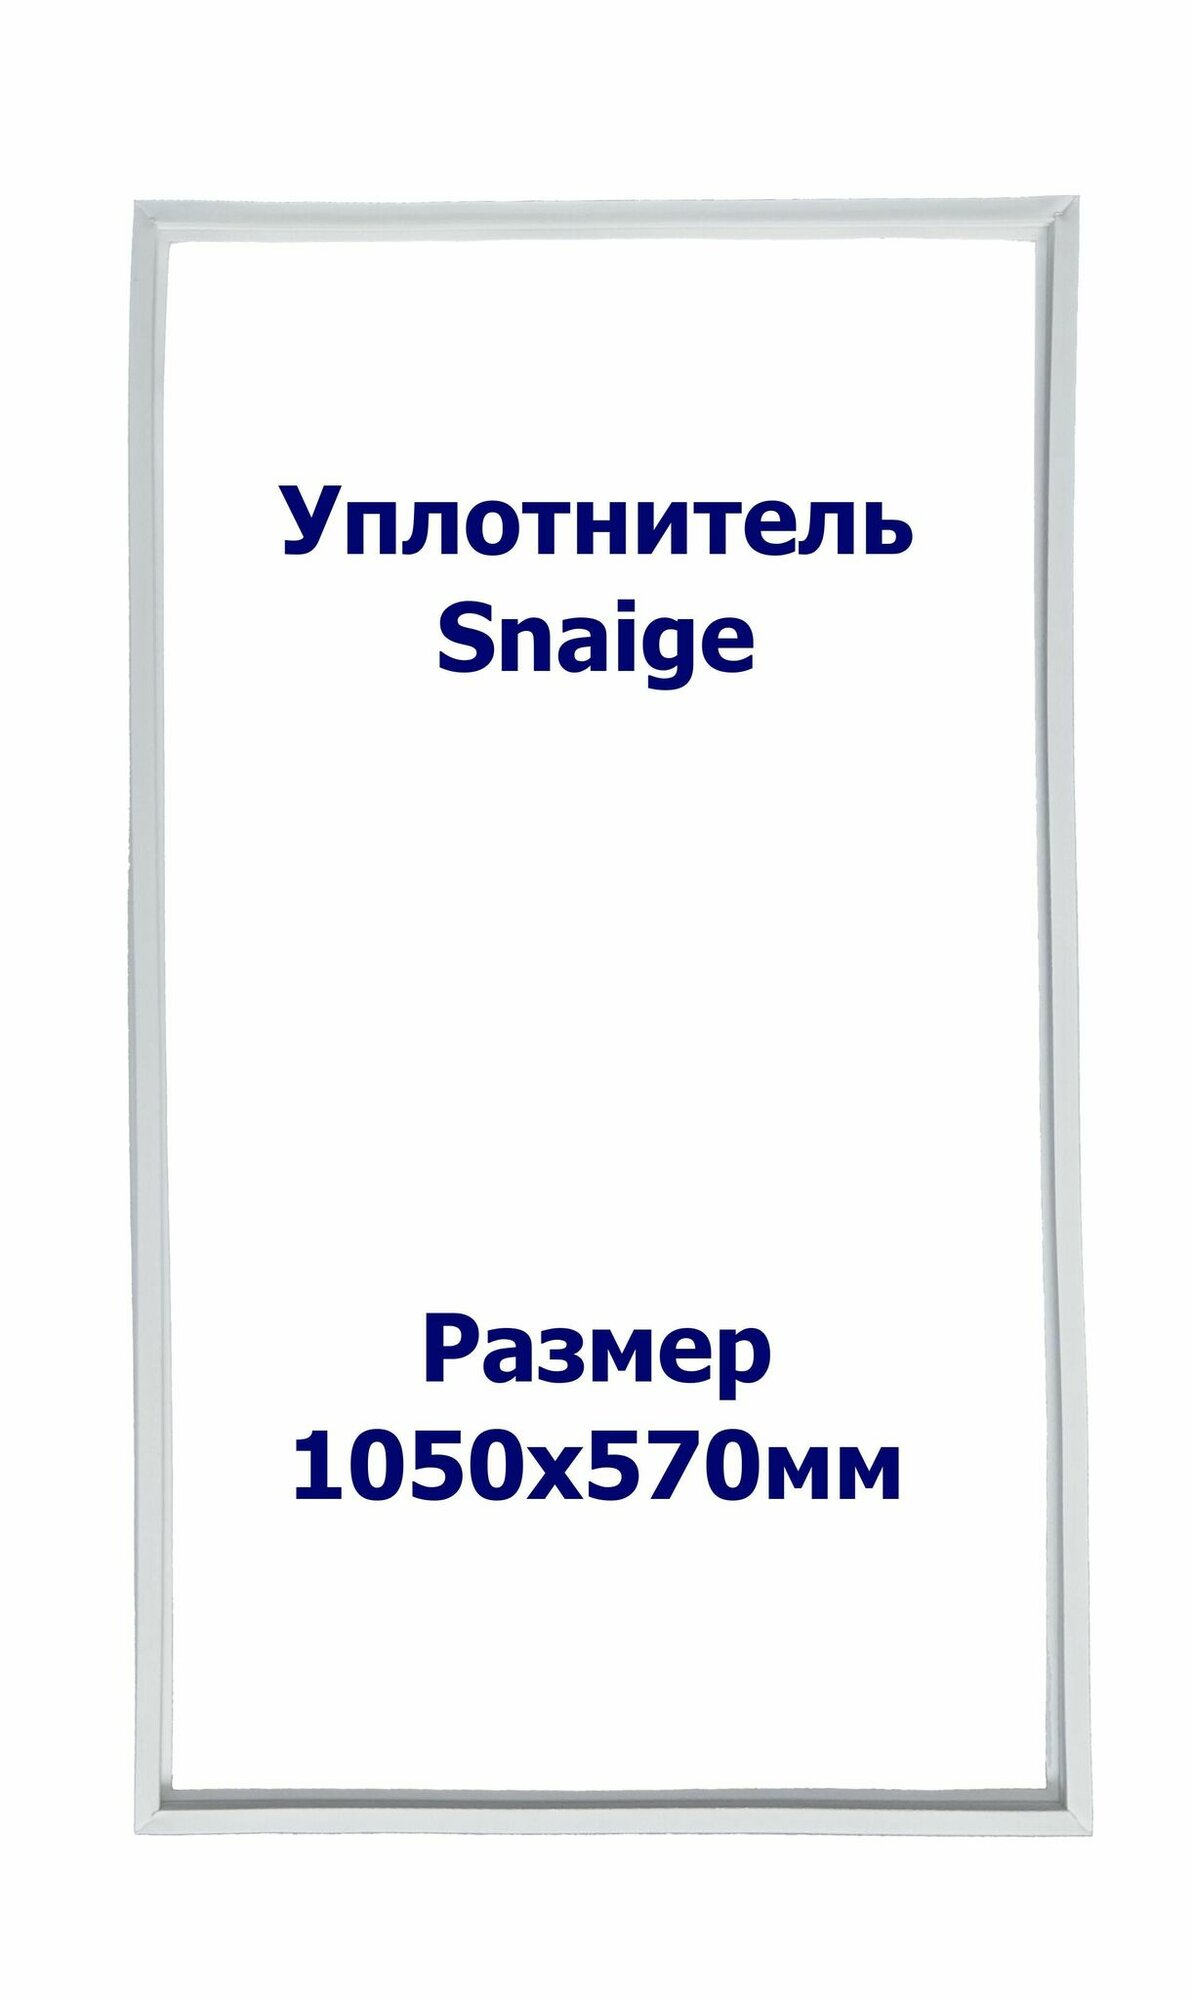 Уплотнитель Snaige RF 36. х. к, Размер - 1050x570 мм. SK